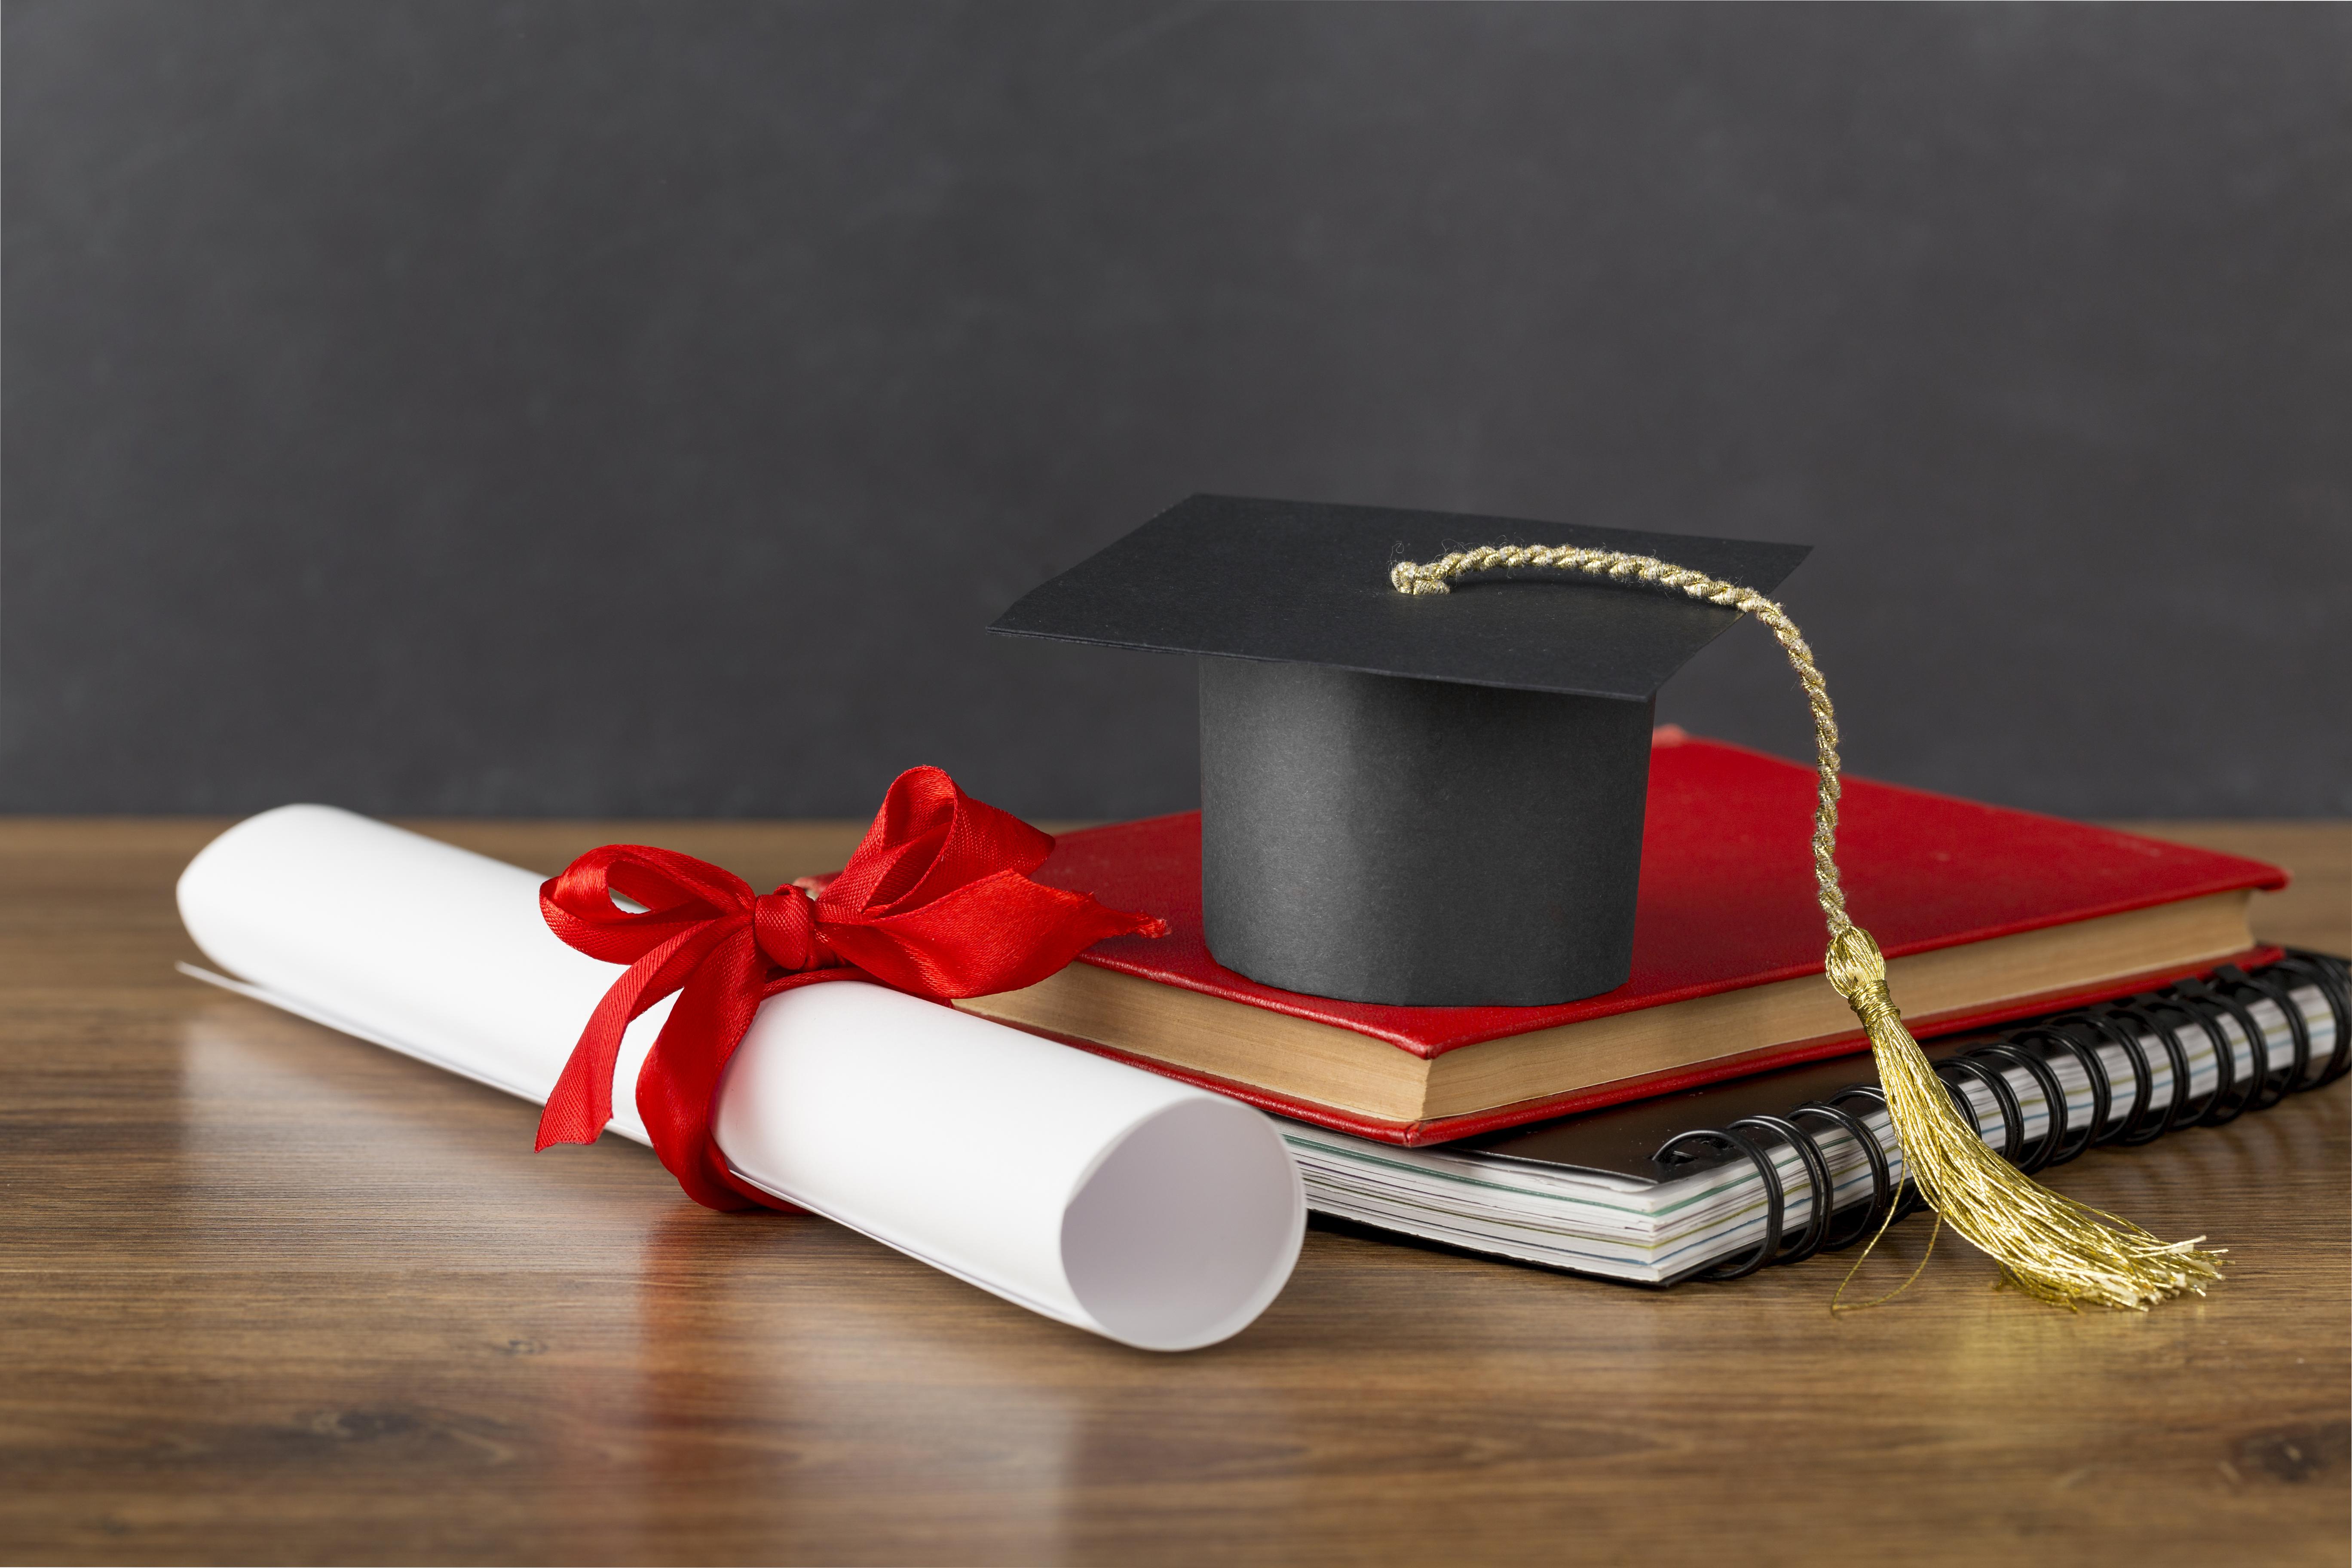 education-day-arrangement-with-graduation-cap